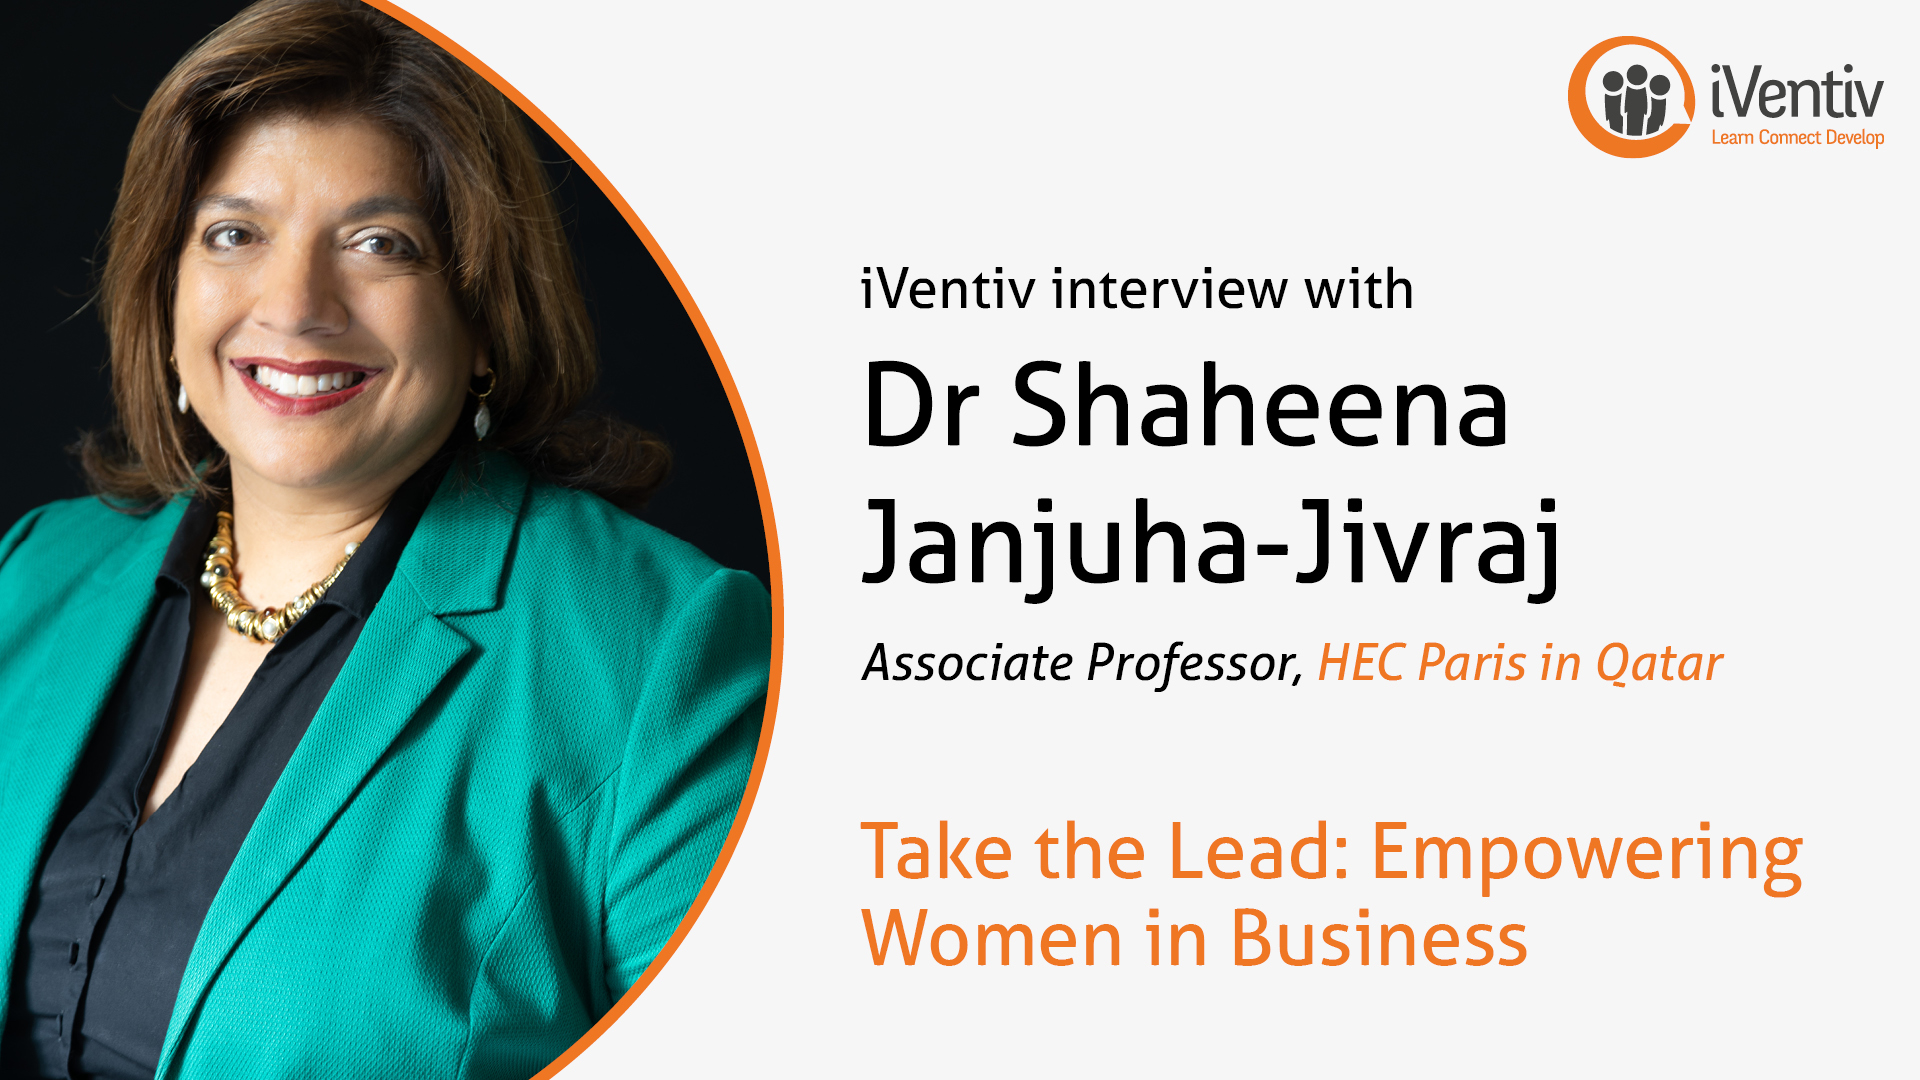 Dr Shaheena Janjuha-Jivraj